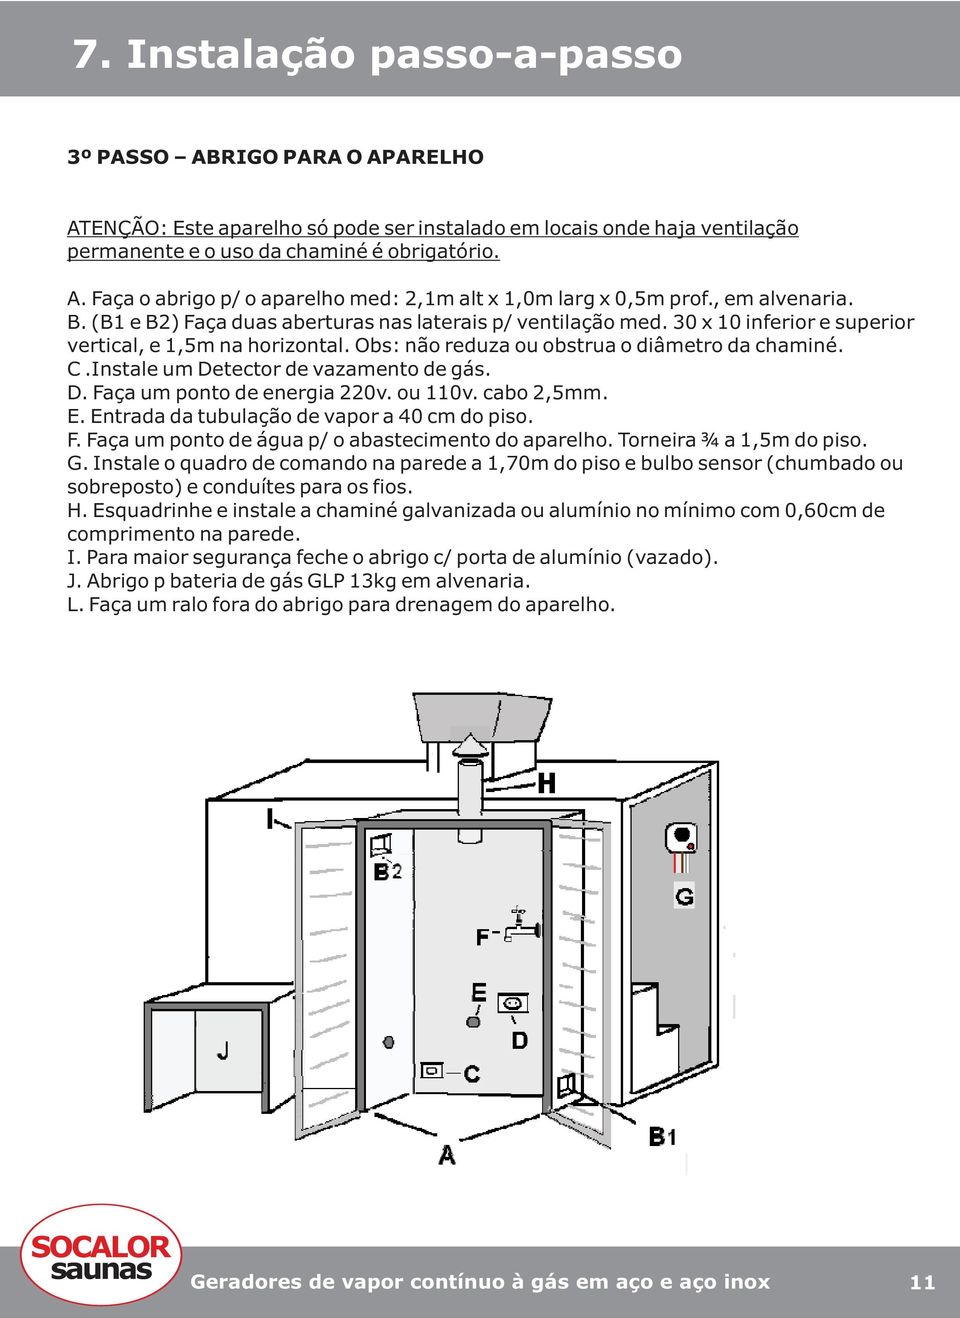 Instale um Detector de vazamento de gás. D. Faça um ponto de energia 220v. ou 110v. cabo 2,5mm. E. Entrada da tubulação de vapor a 40 cm do piso. F. Faça um ponto de água p/ o abastecimento do aparelho.